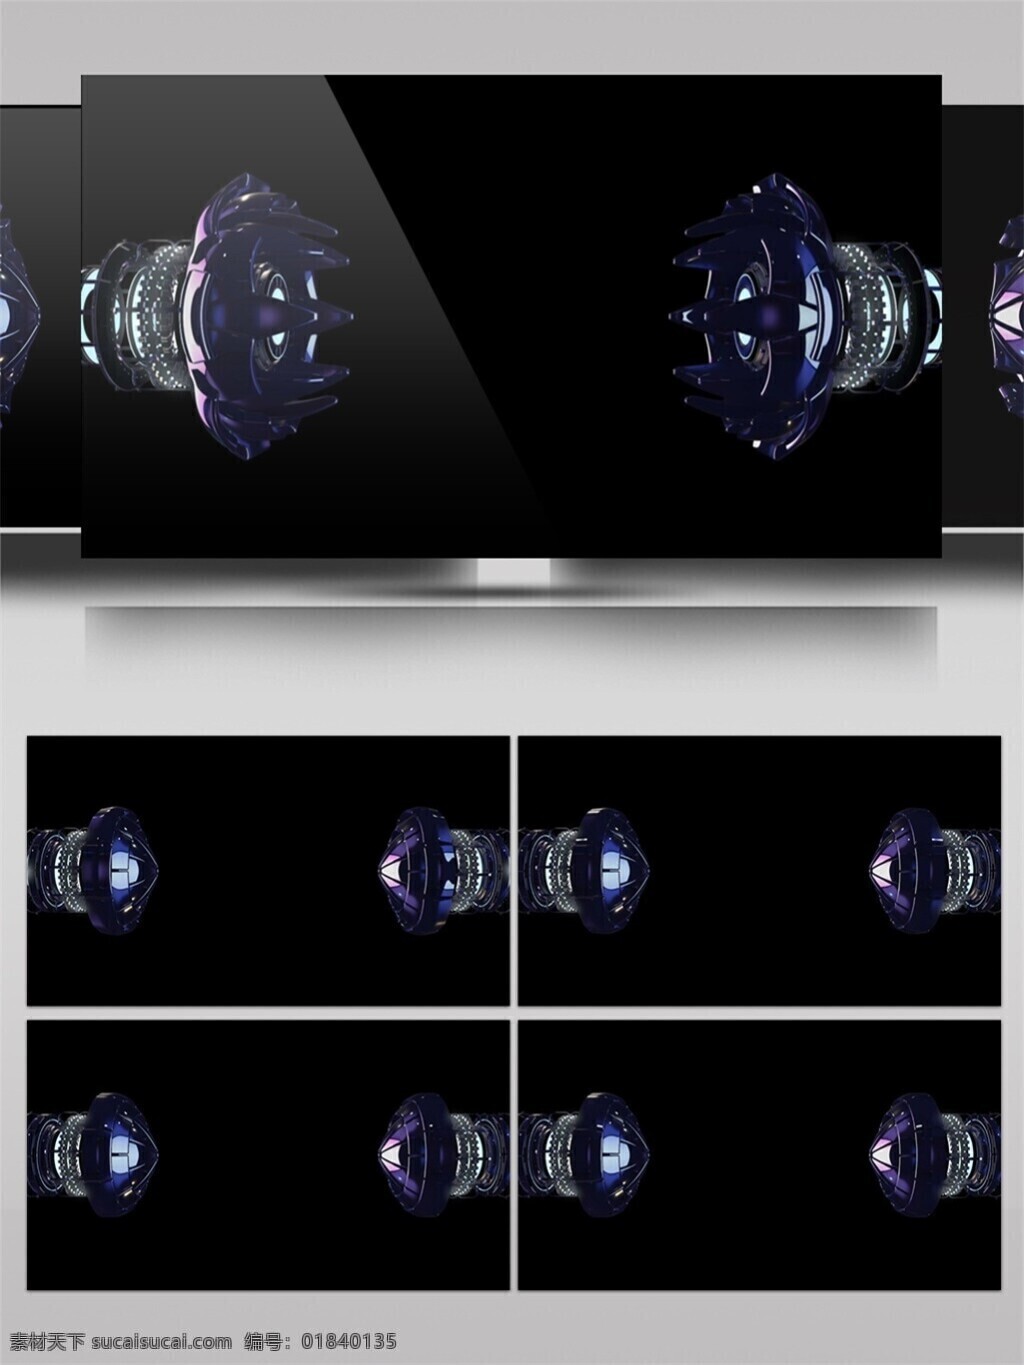 激光 机器人 视频 3d视频素材 特效视频素材 炫酷视频素材